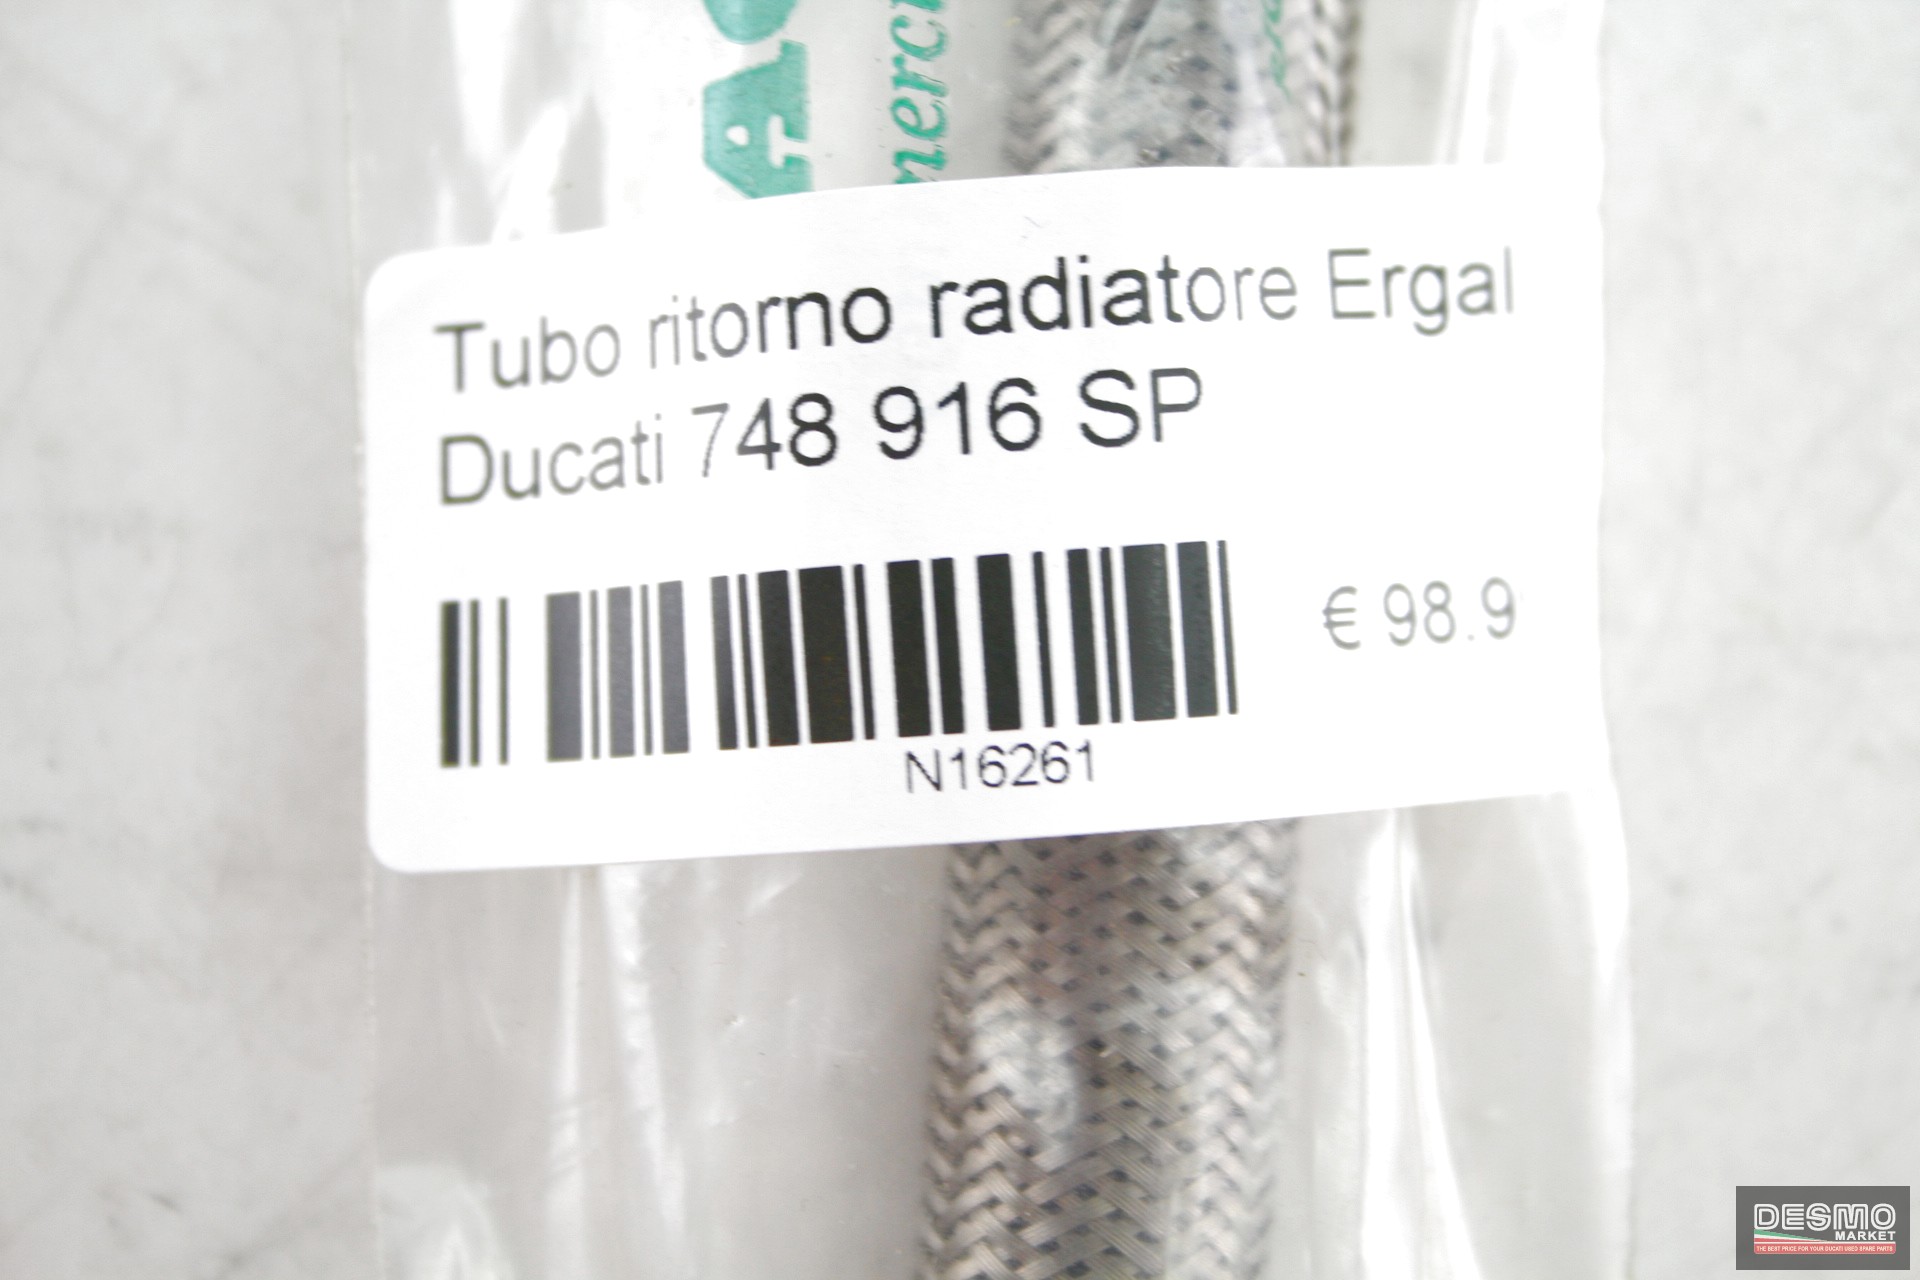 Tubo ritorno radiatore ergal Ducati 748 916 SP